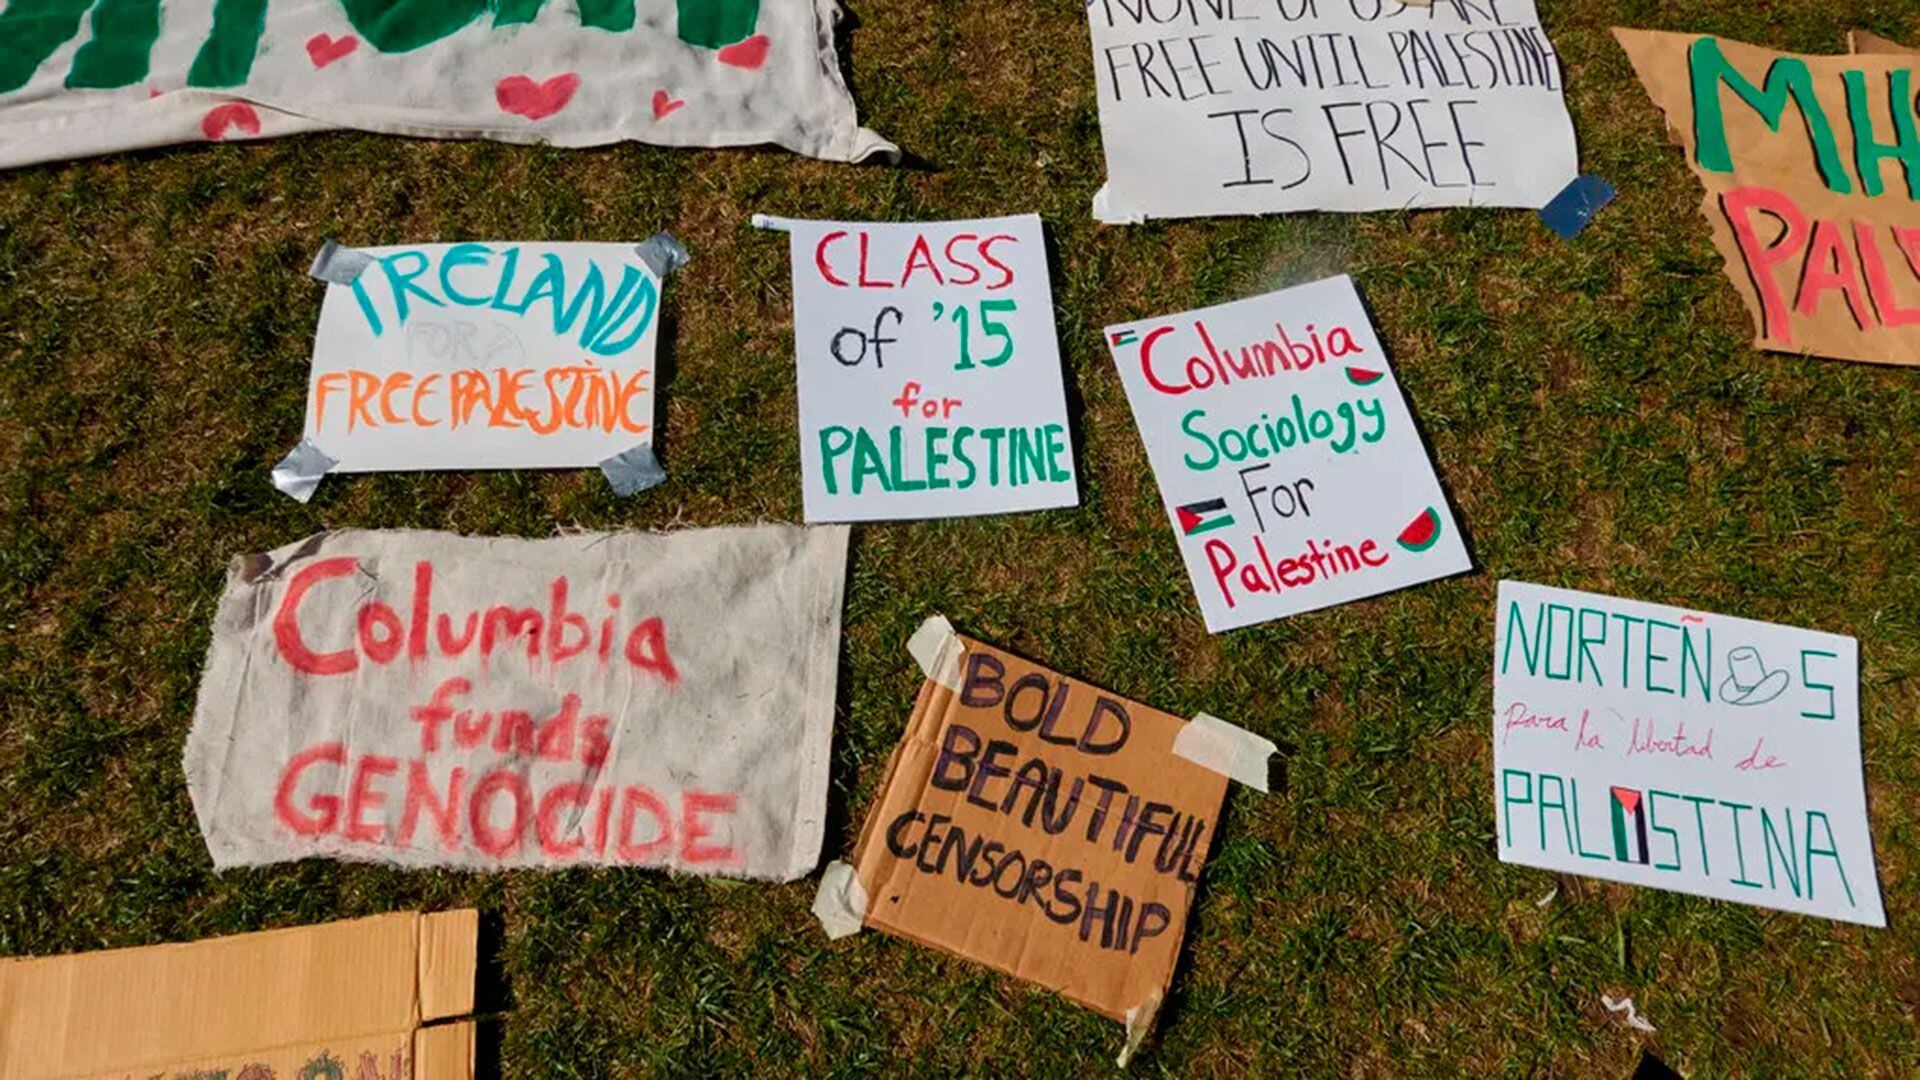 Las universidades enfrentan una pregunta urgente: ¿Qué hace que una protesta sea antisemita?